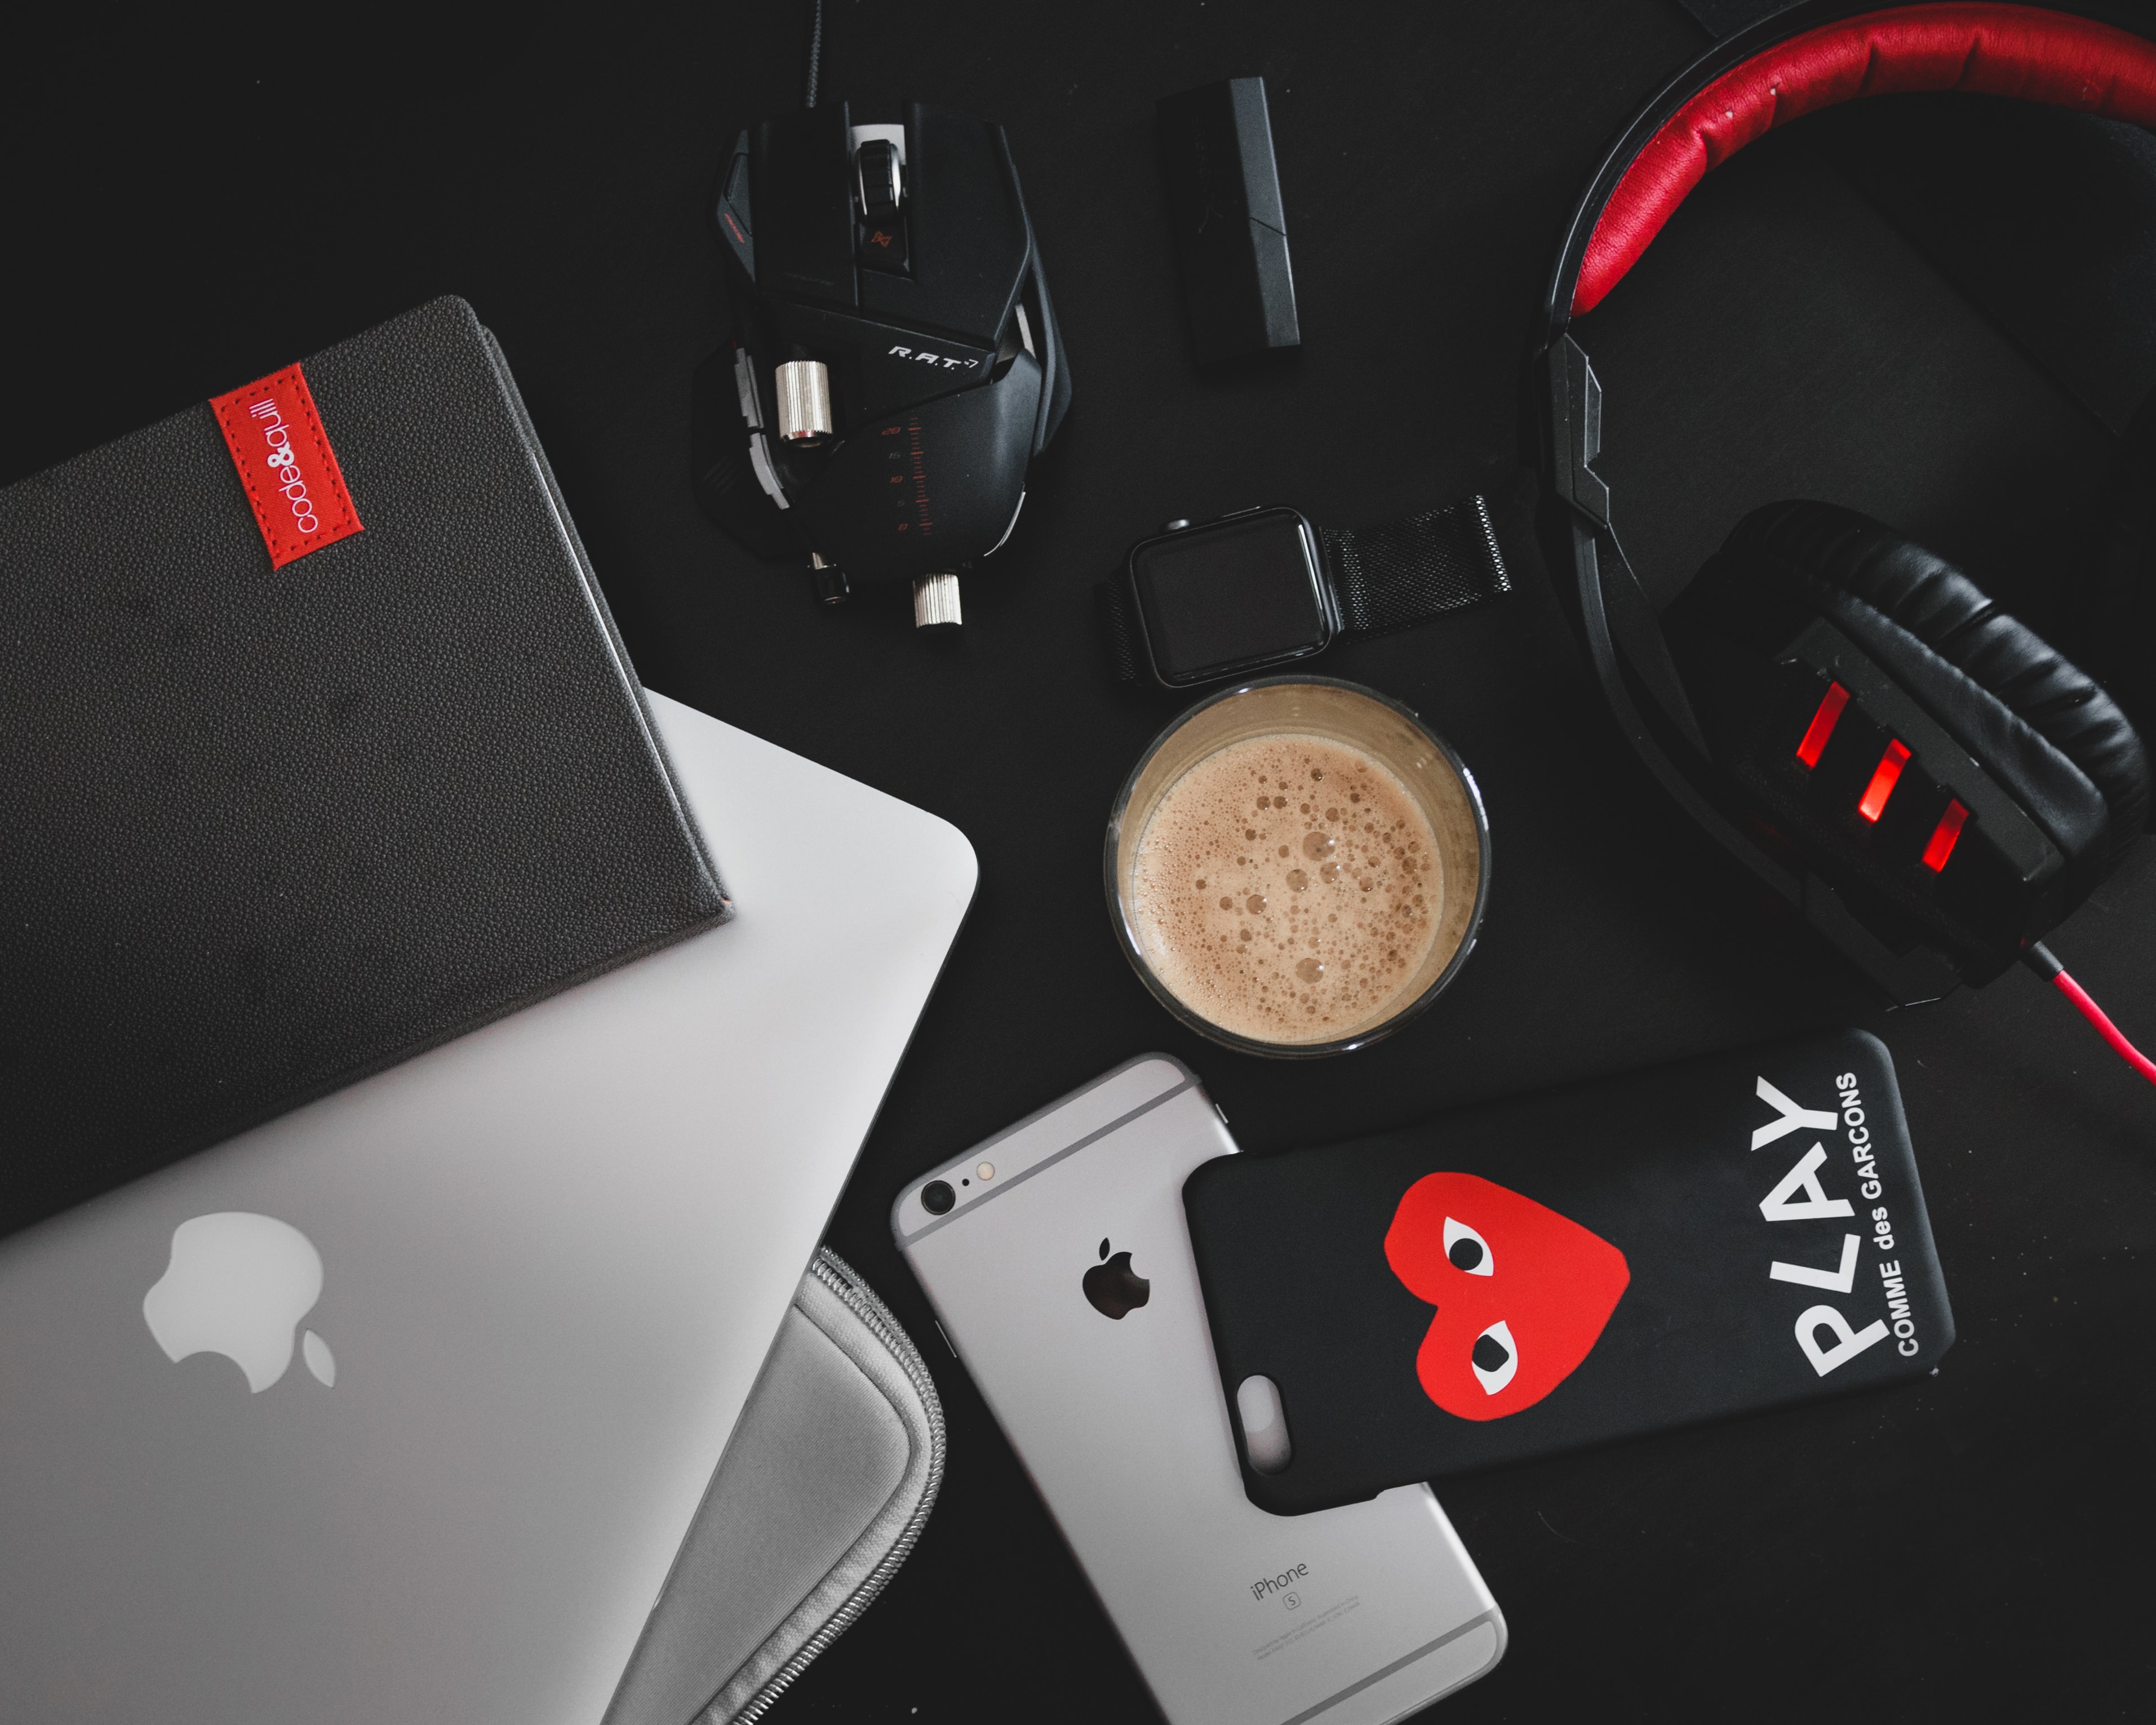 gadget wallpaper,headphones,audio equipment,red,gadget,product